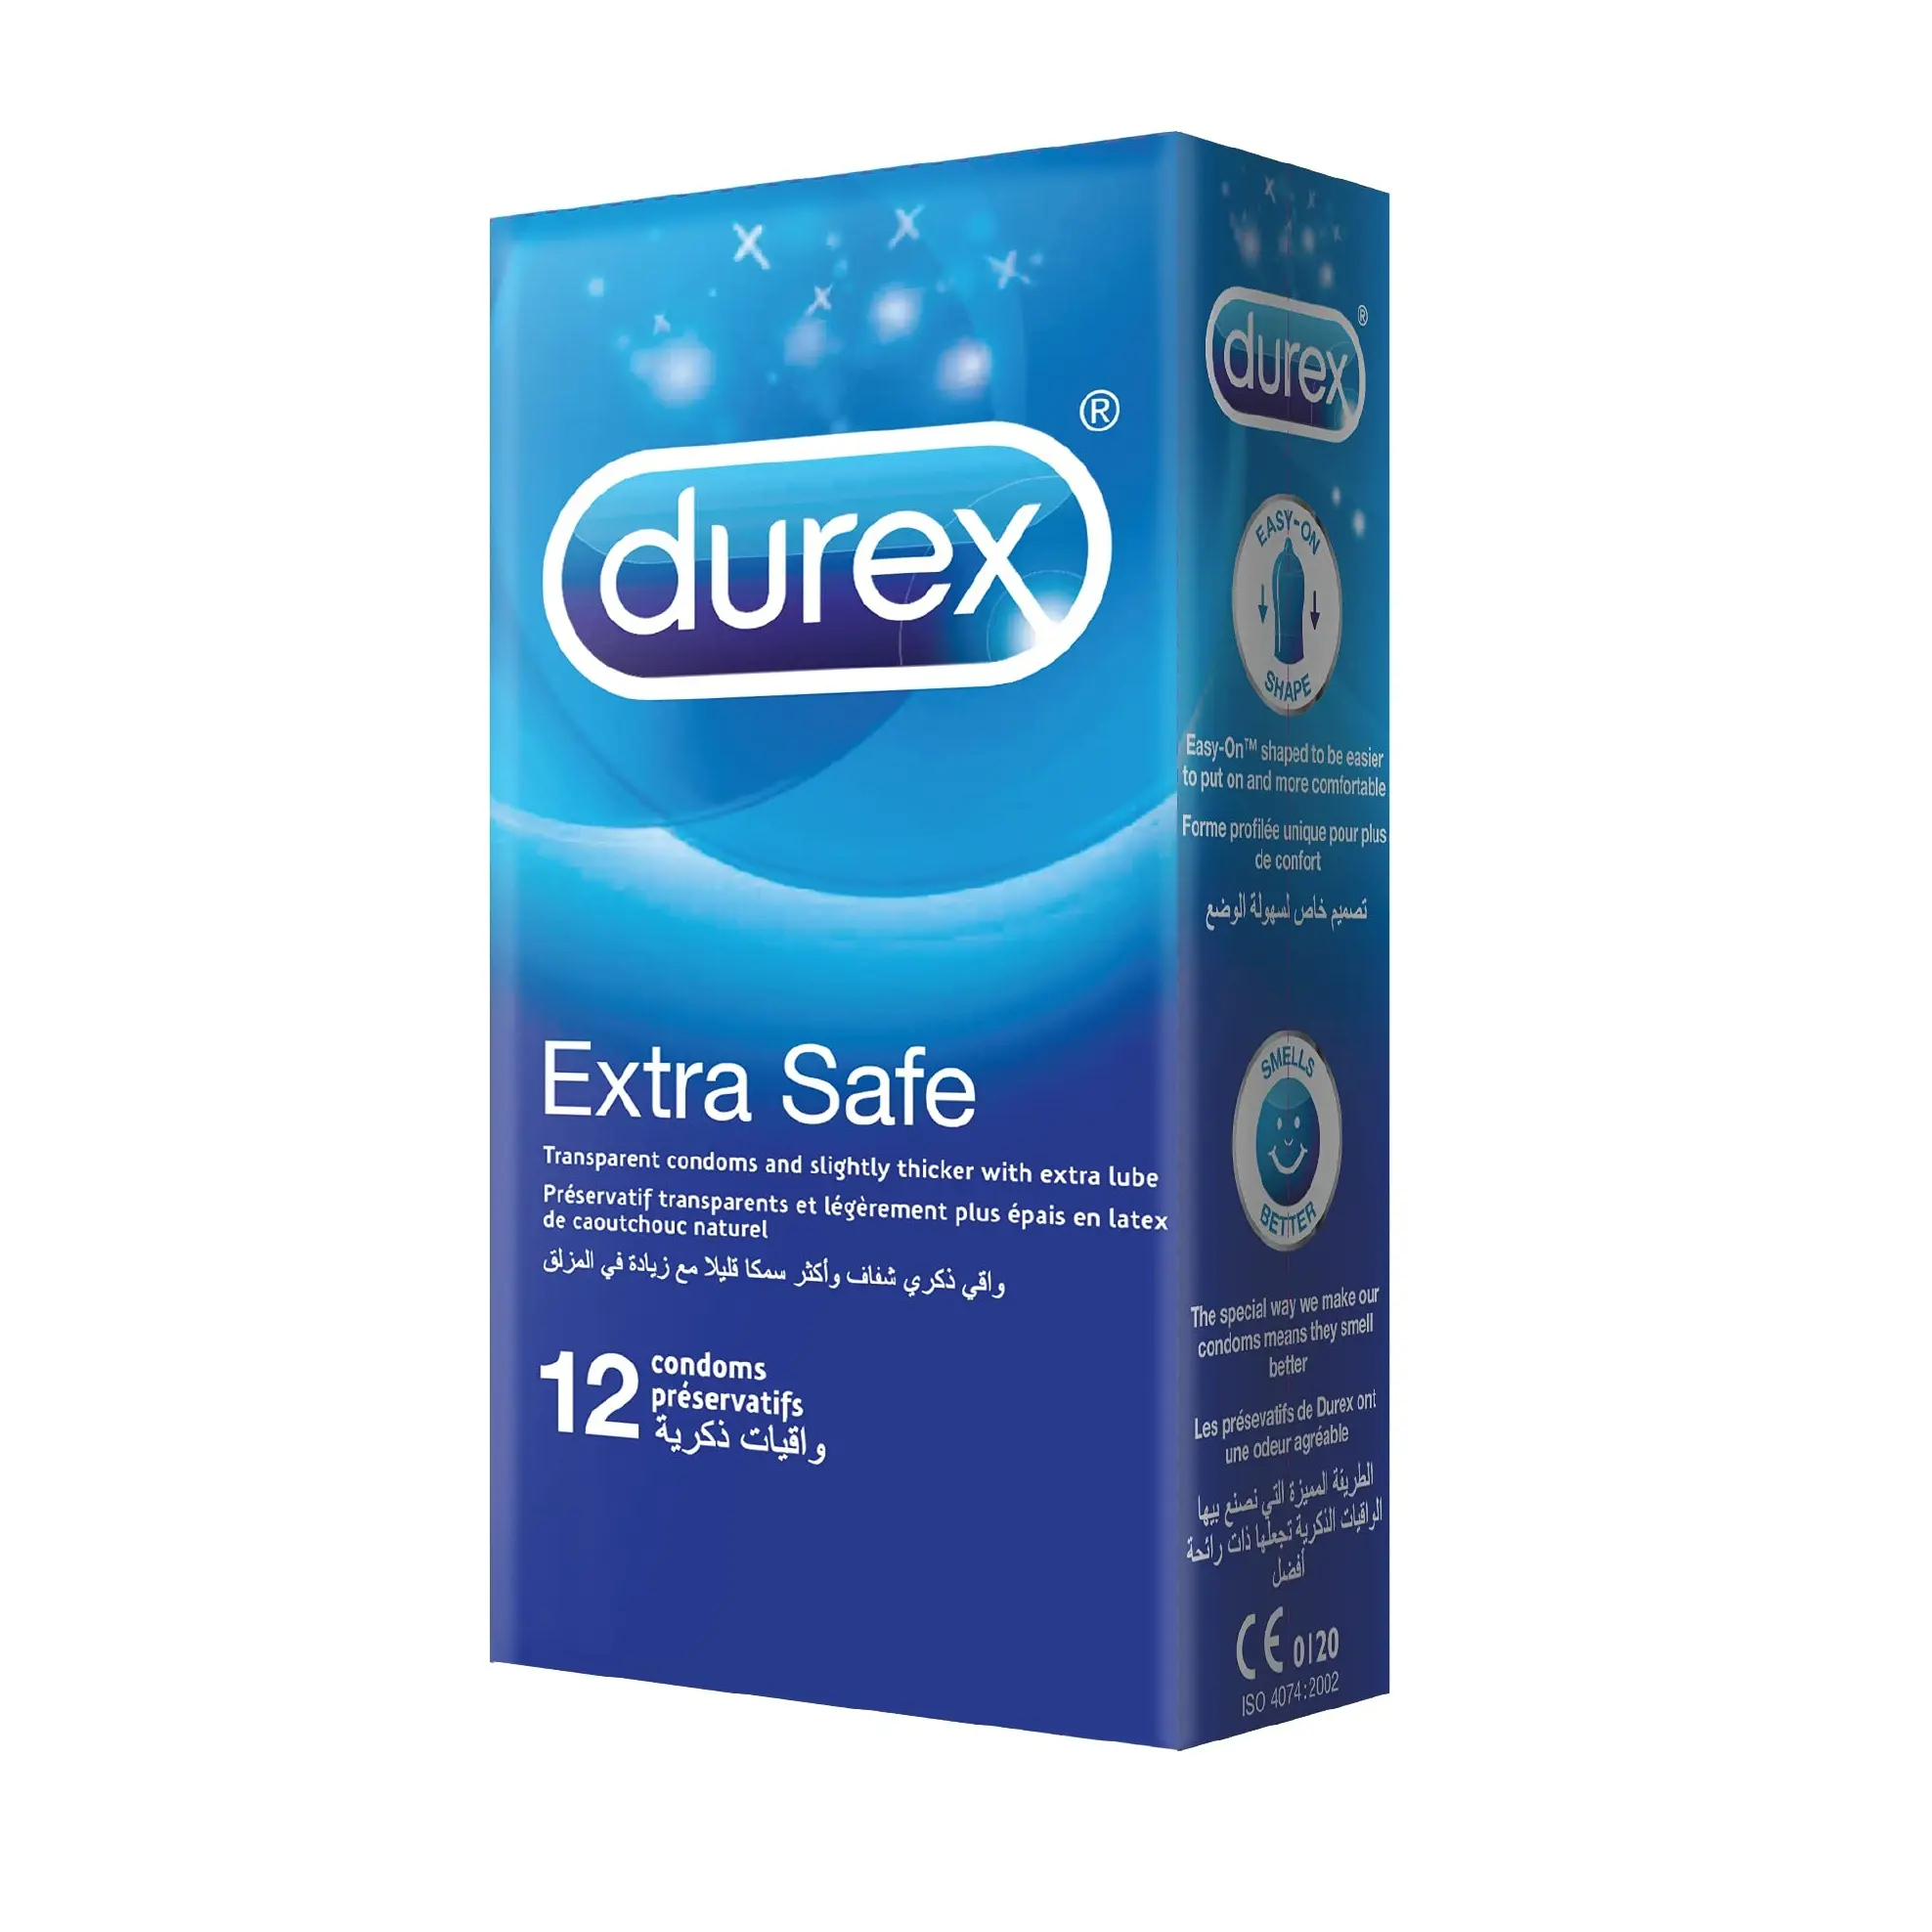 Preservativo Durex di alta qualità tutti i tipi a basso prezzo